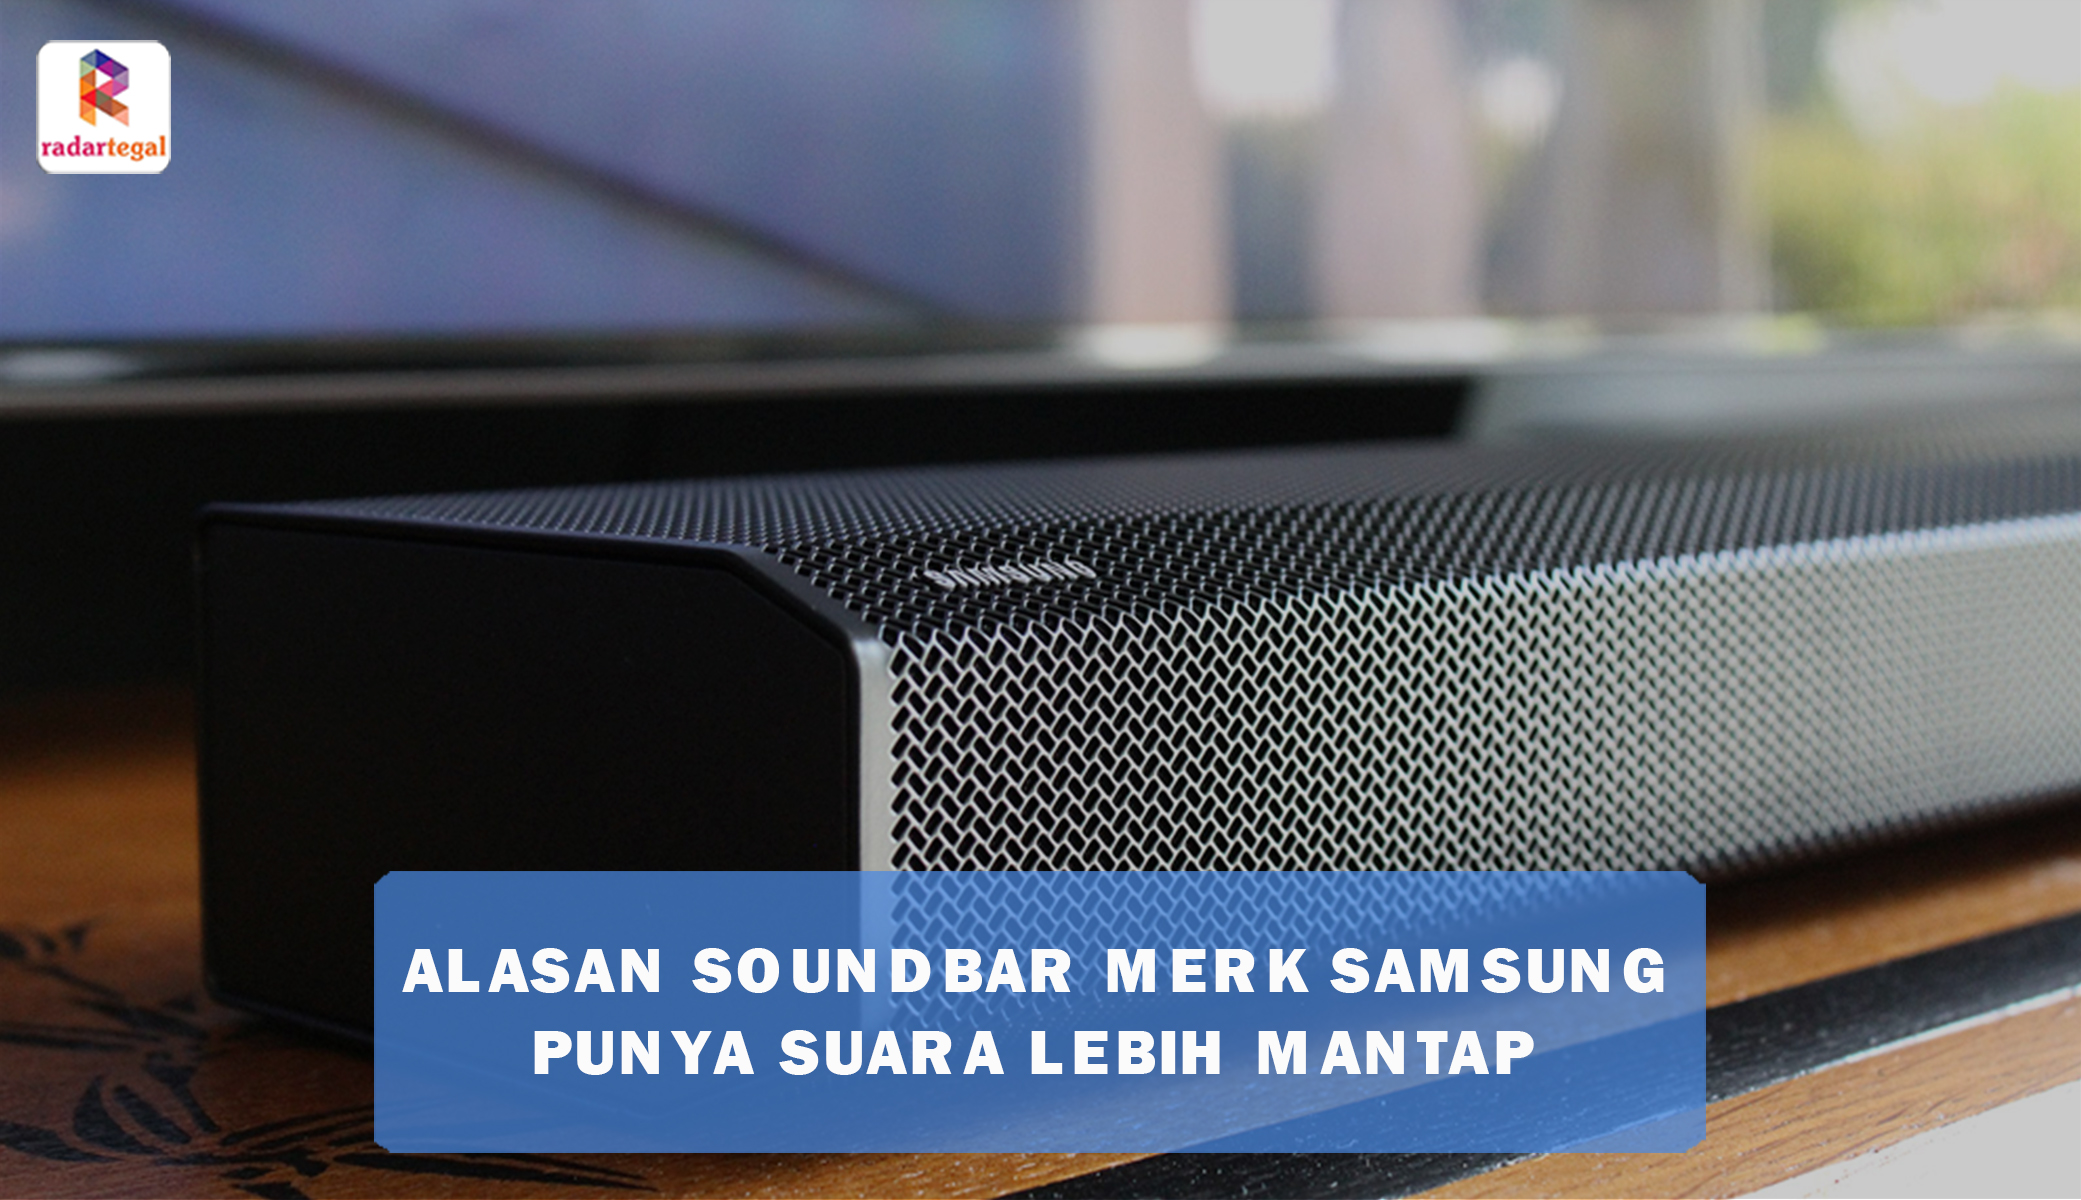 7 Alasan Soundbar Merk Samsung Punya Suara yang Jauh Lebih Menggelegar Dibanding Merk Lain